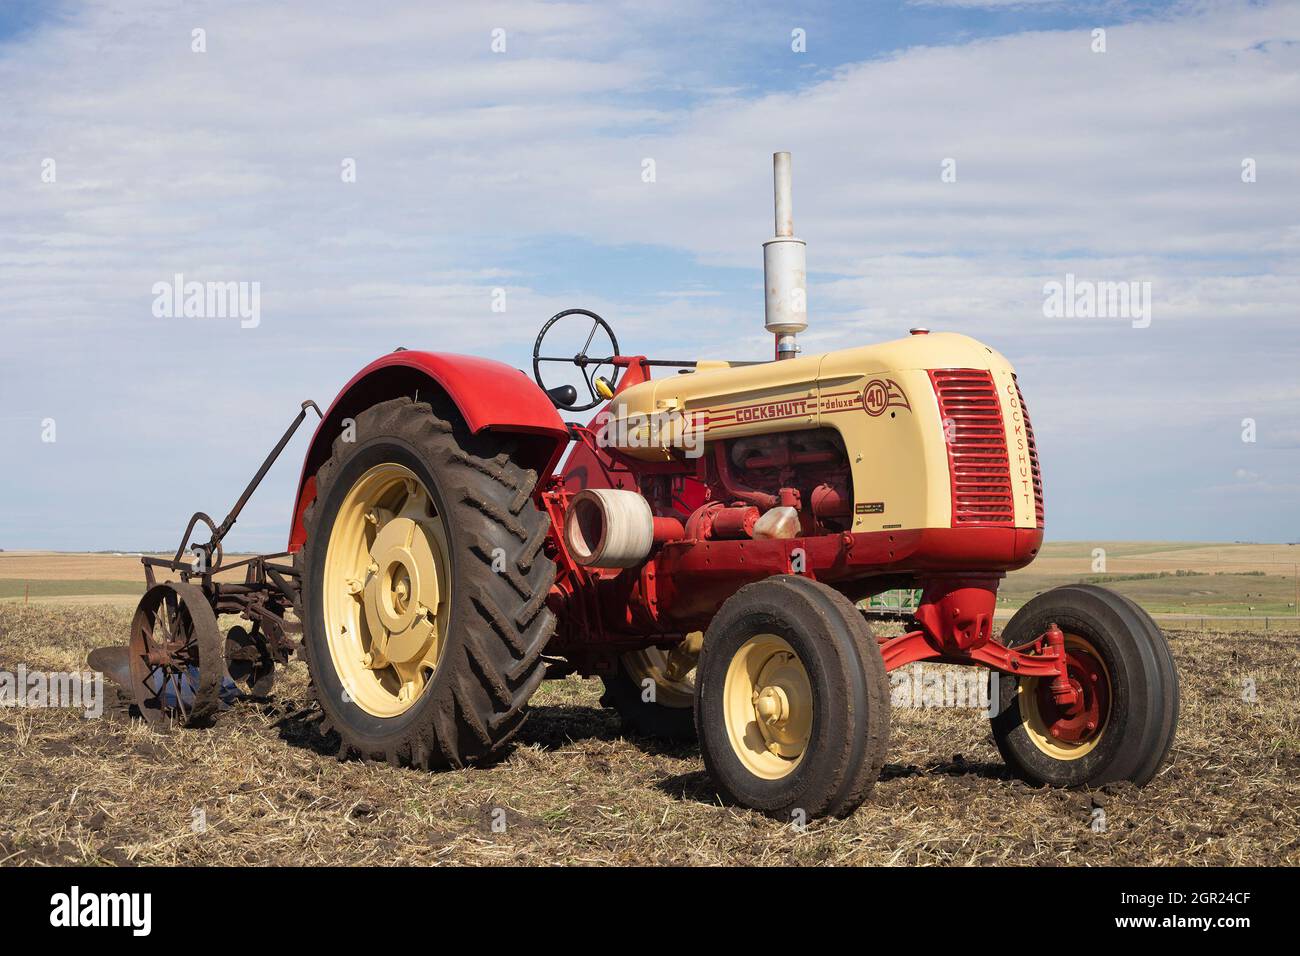 Cockshutt modèle 40 Deluxe tracteur d'époque tirant une charrue dans un champ de ferme pour labourer le sol après la récolte. Ce modèle a été fabriqué de 1949 à 1958 Banque D'Images